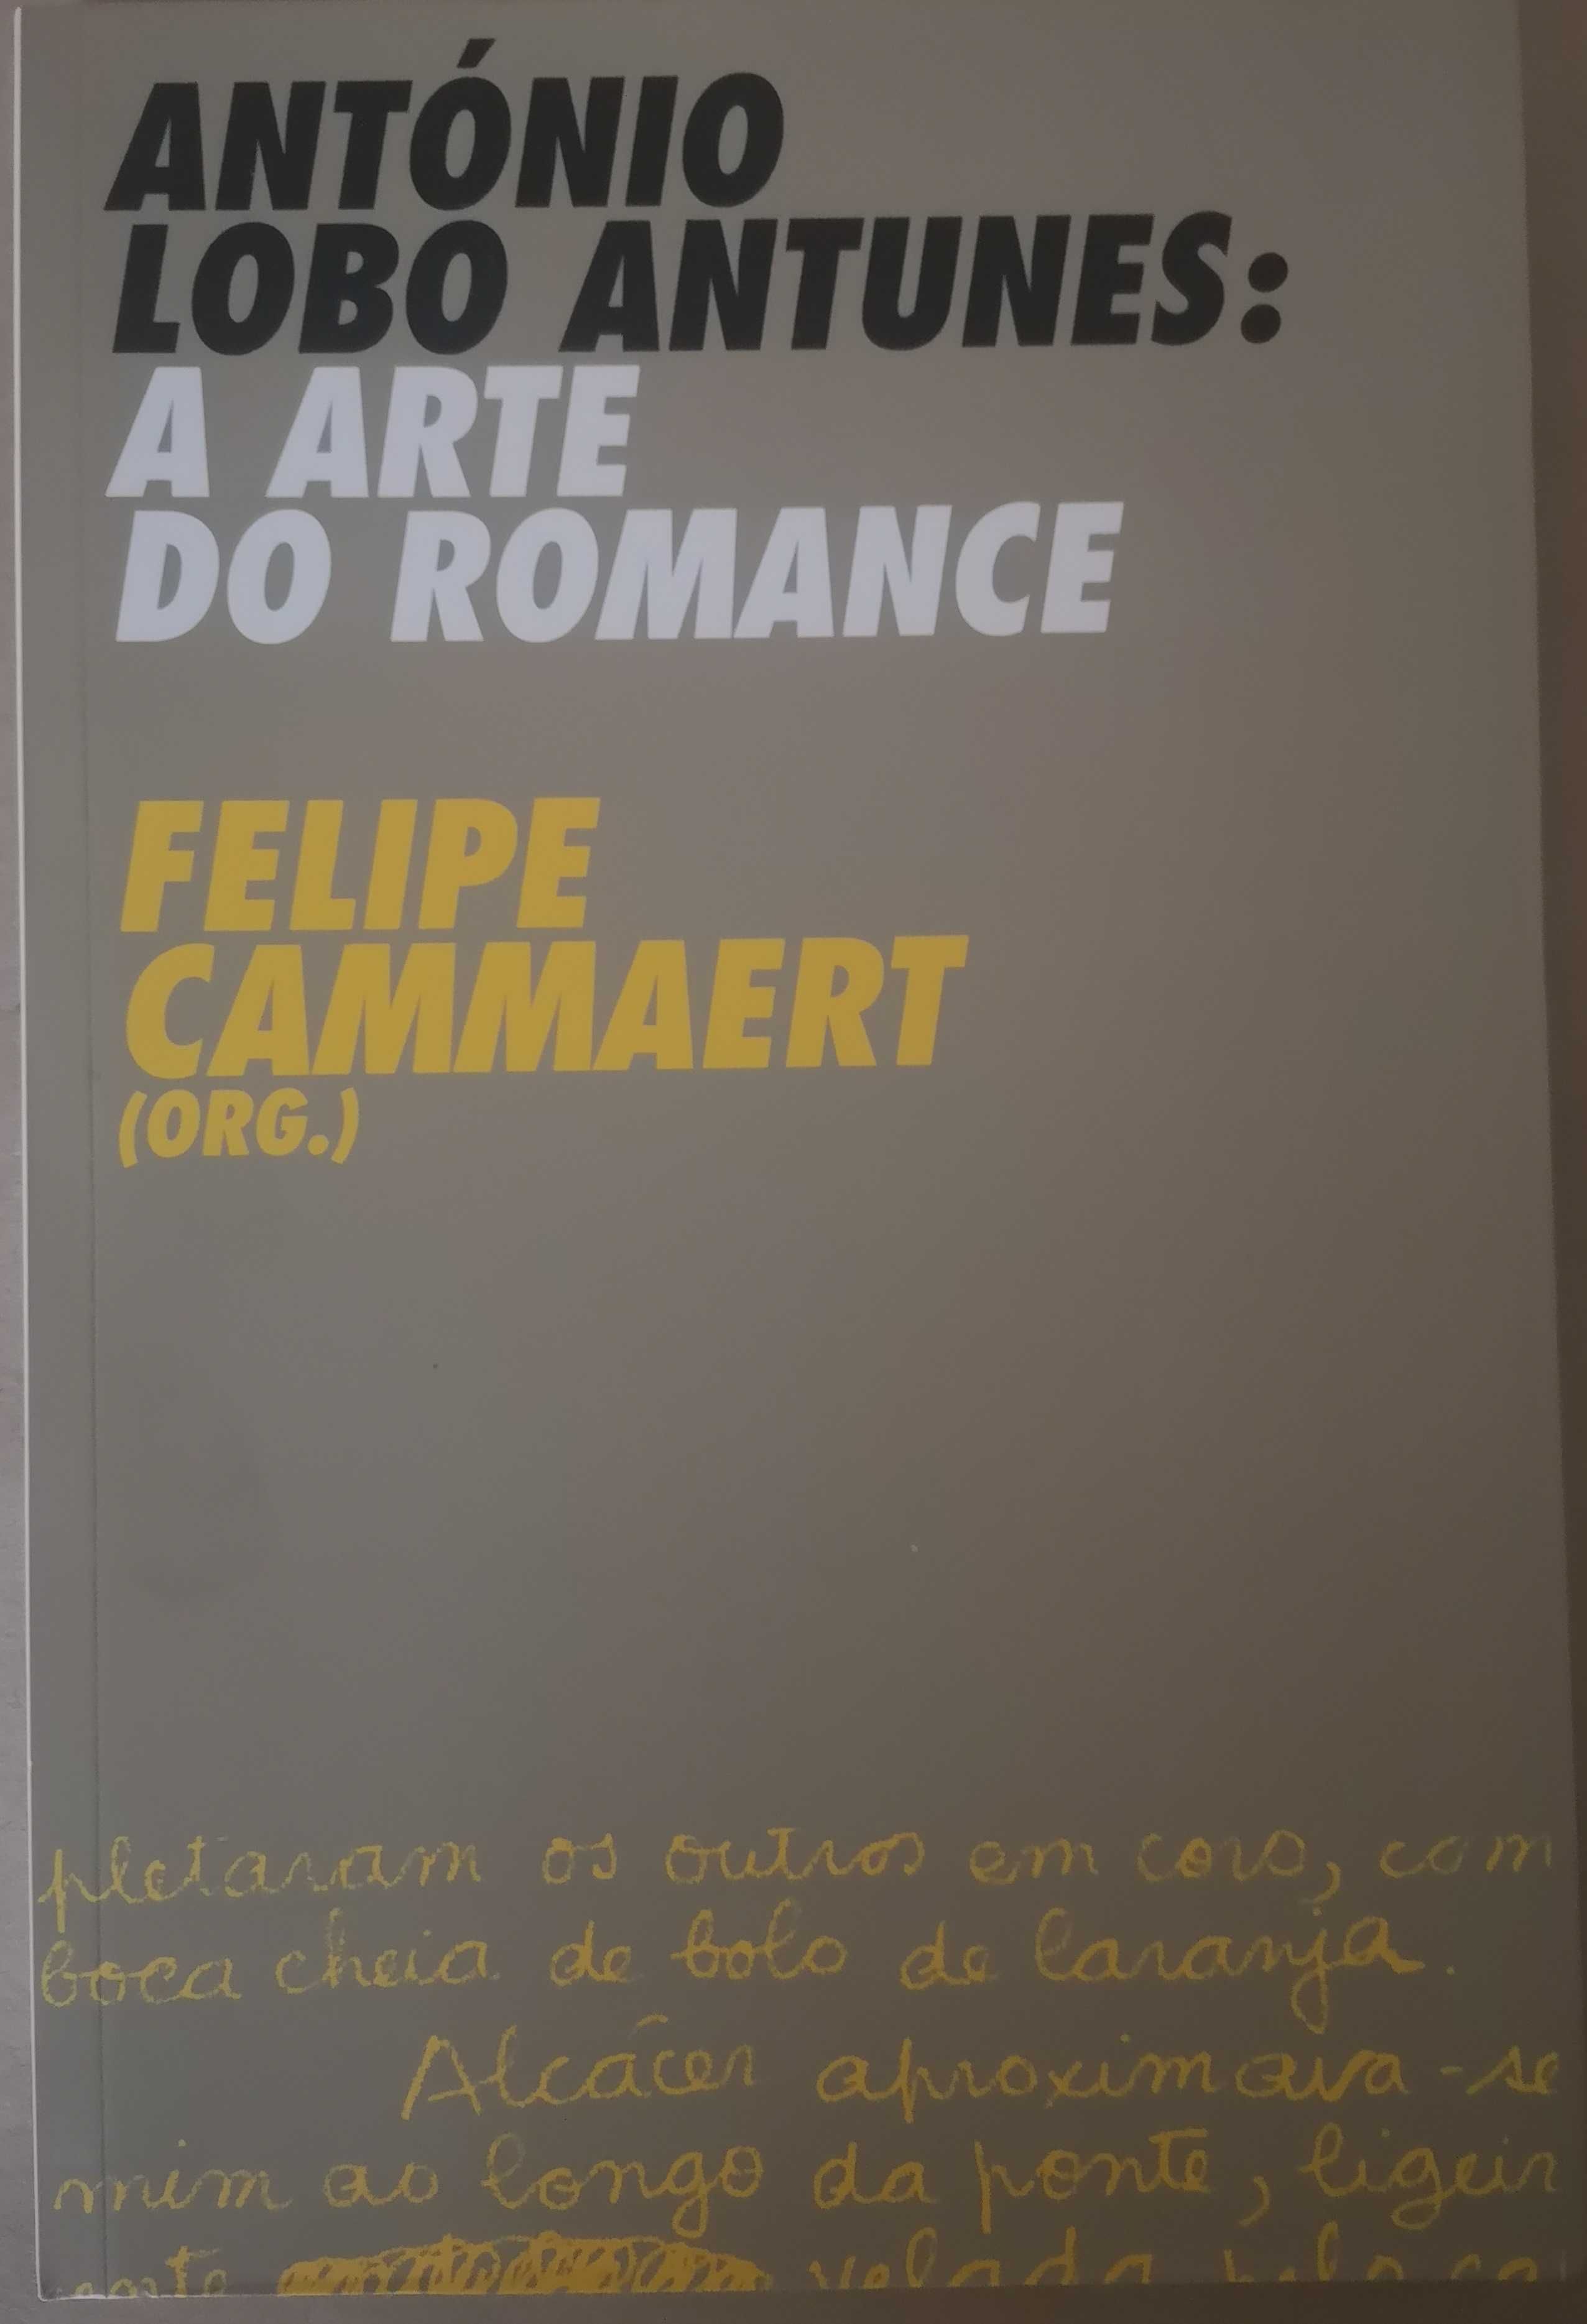 "António Lobo Antunes: A Arte do Romance"